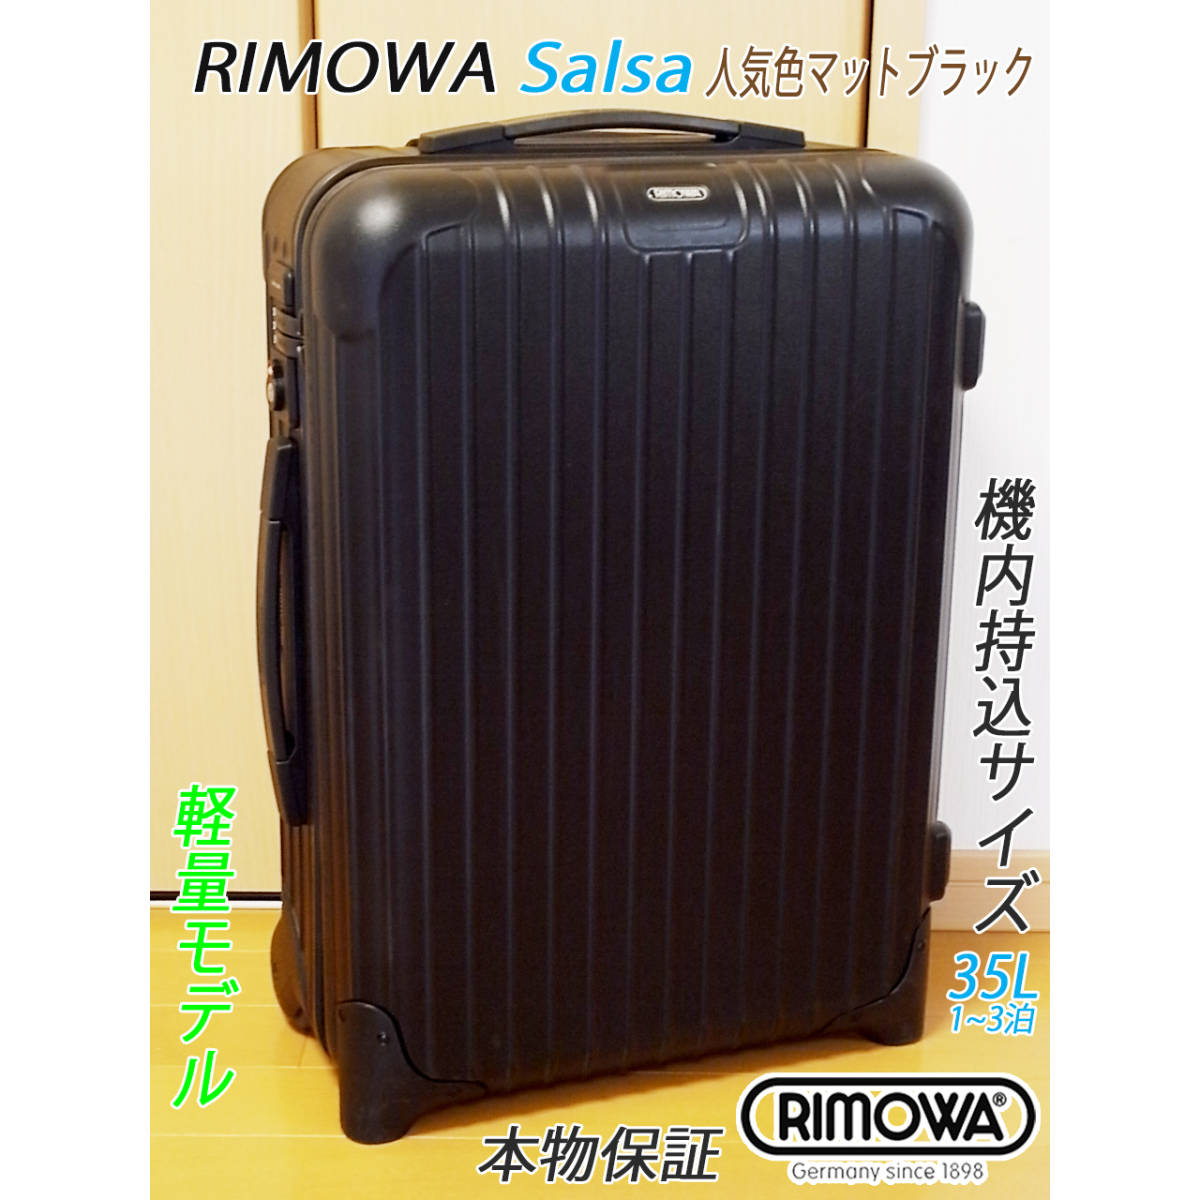 美品 良品 RIMOWA Salsa/リモワ サルサ 35L 【機内持込可】 超軽量